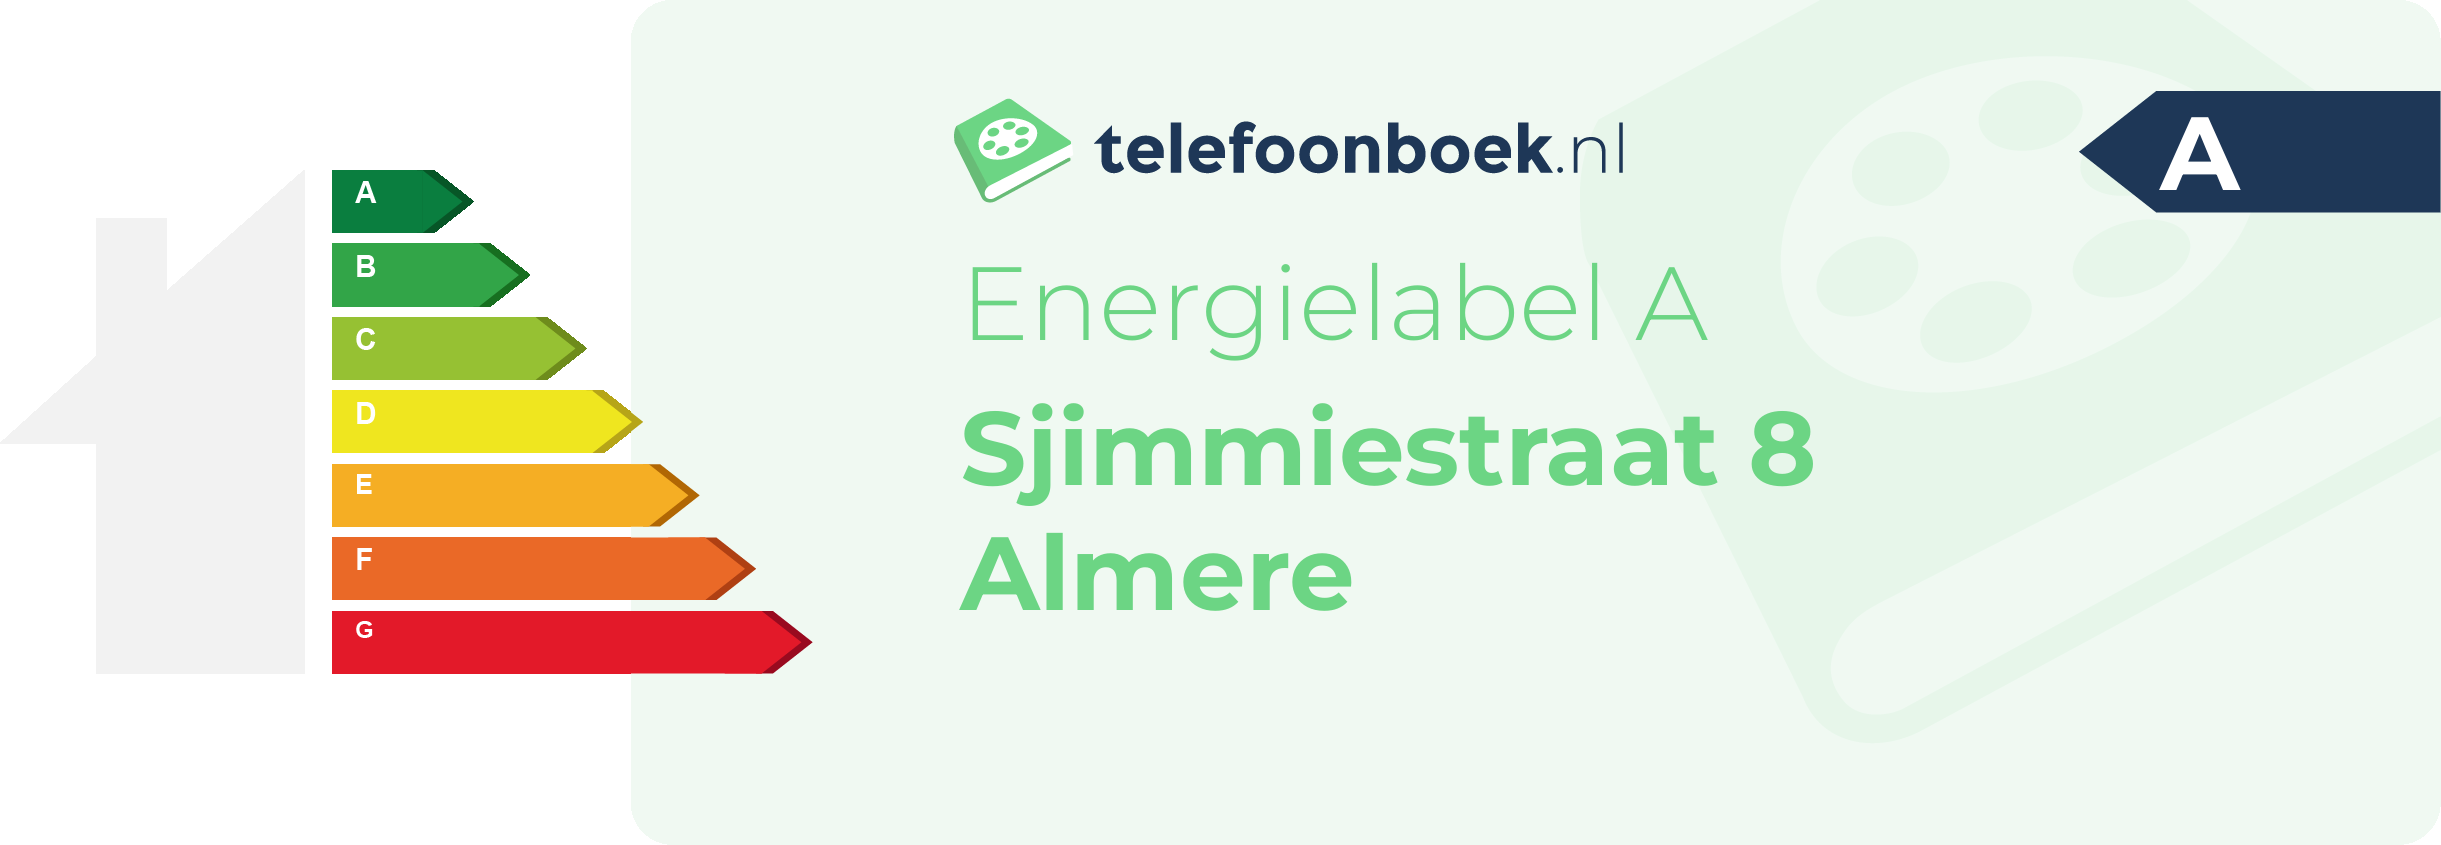 Energielabel Sjimmiestraat 8 Almere